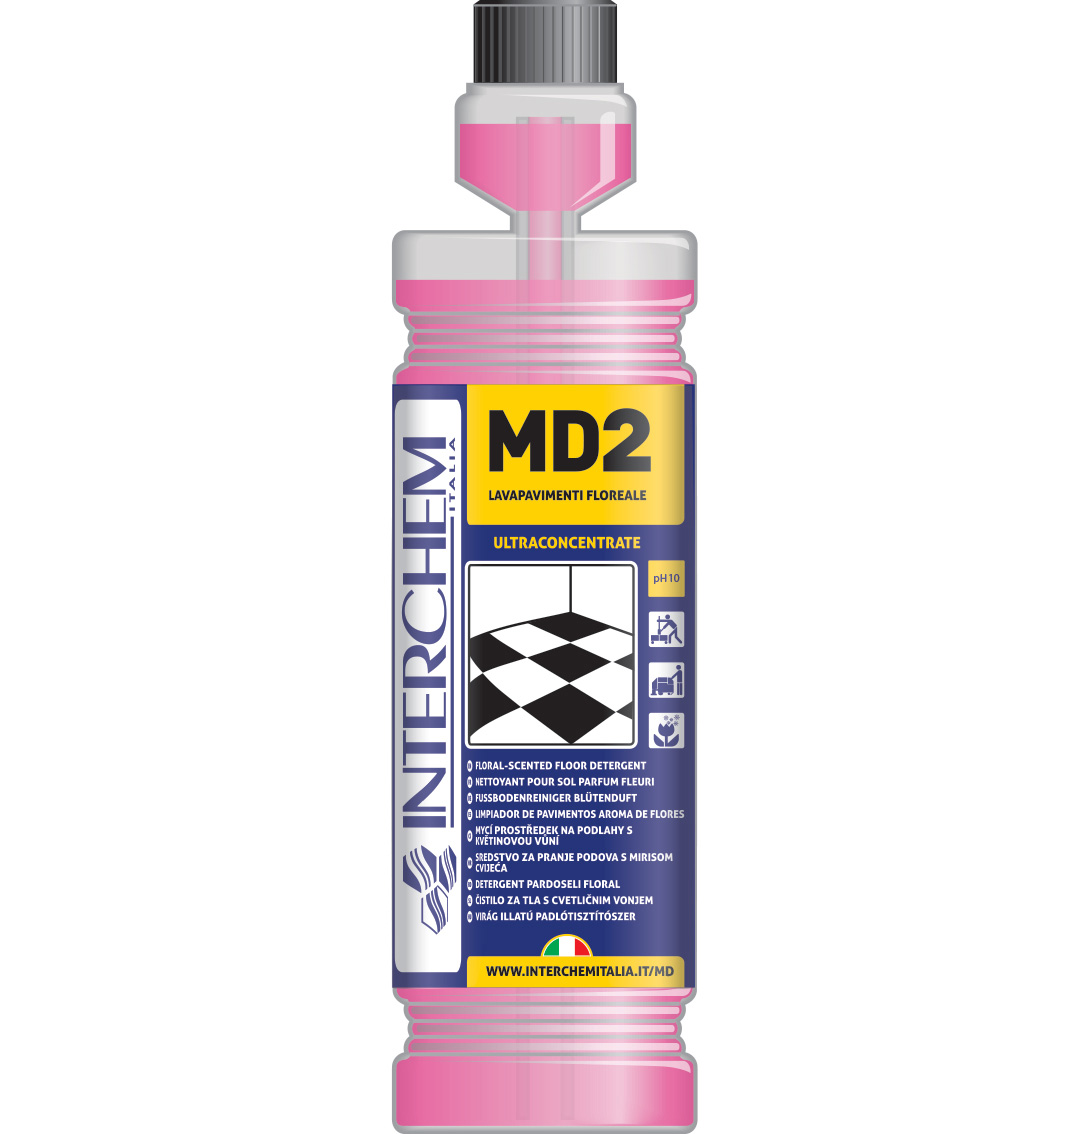 MD2 Detergente lavapavimenti floreale superconcentrato 1 lt